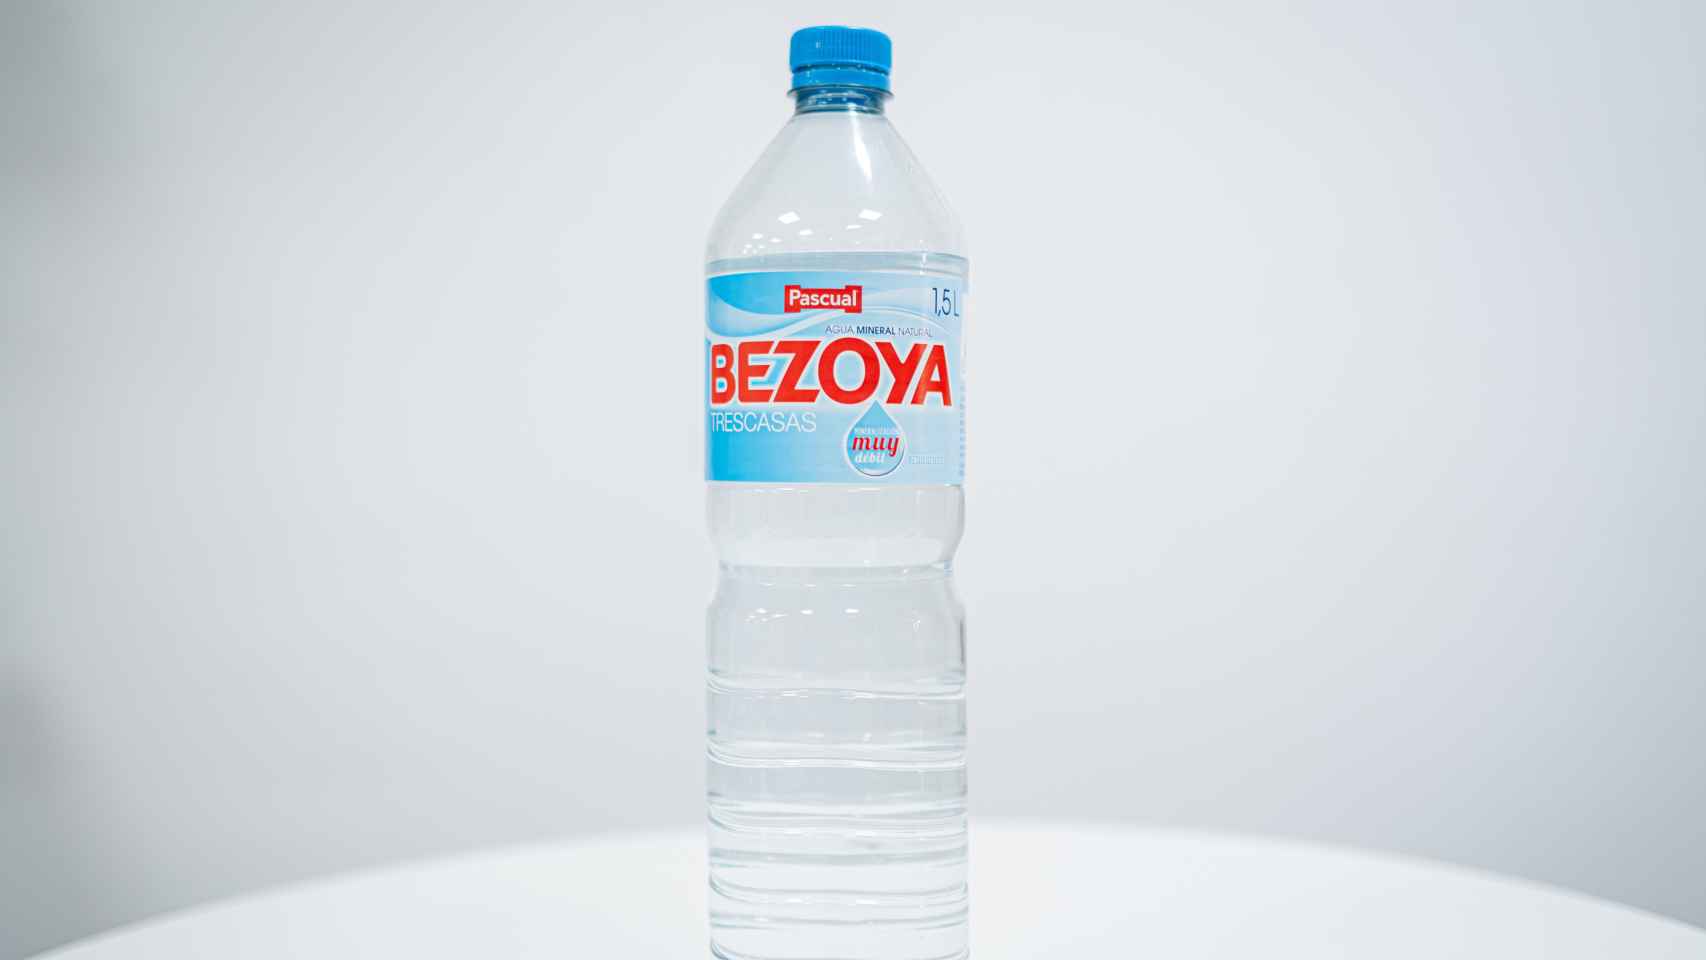 La botella de litro y medio de Bezoya.